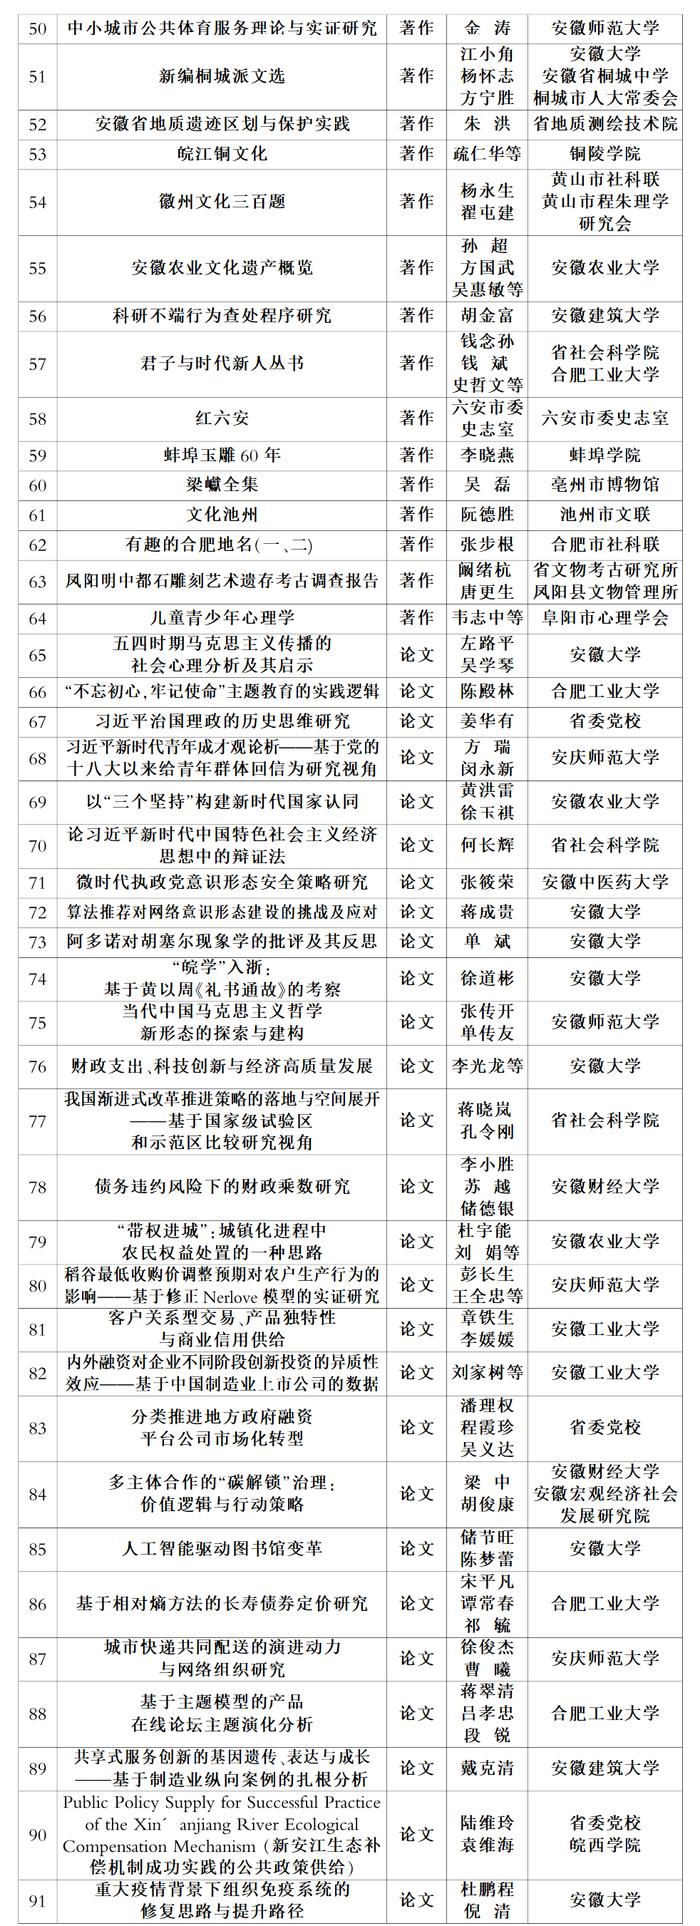 2019—2020年度安徽省社会科学奖拟获奖成果名单公示